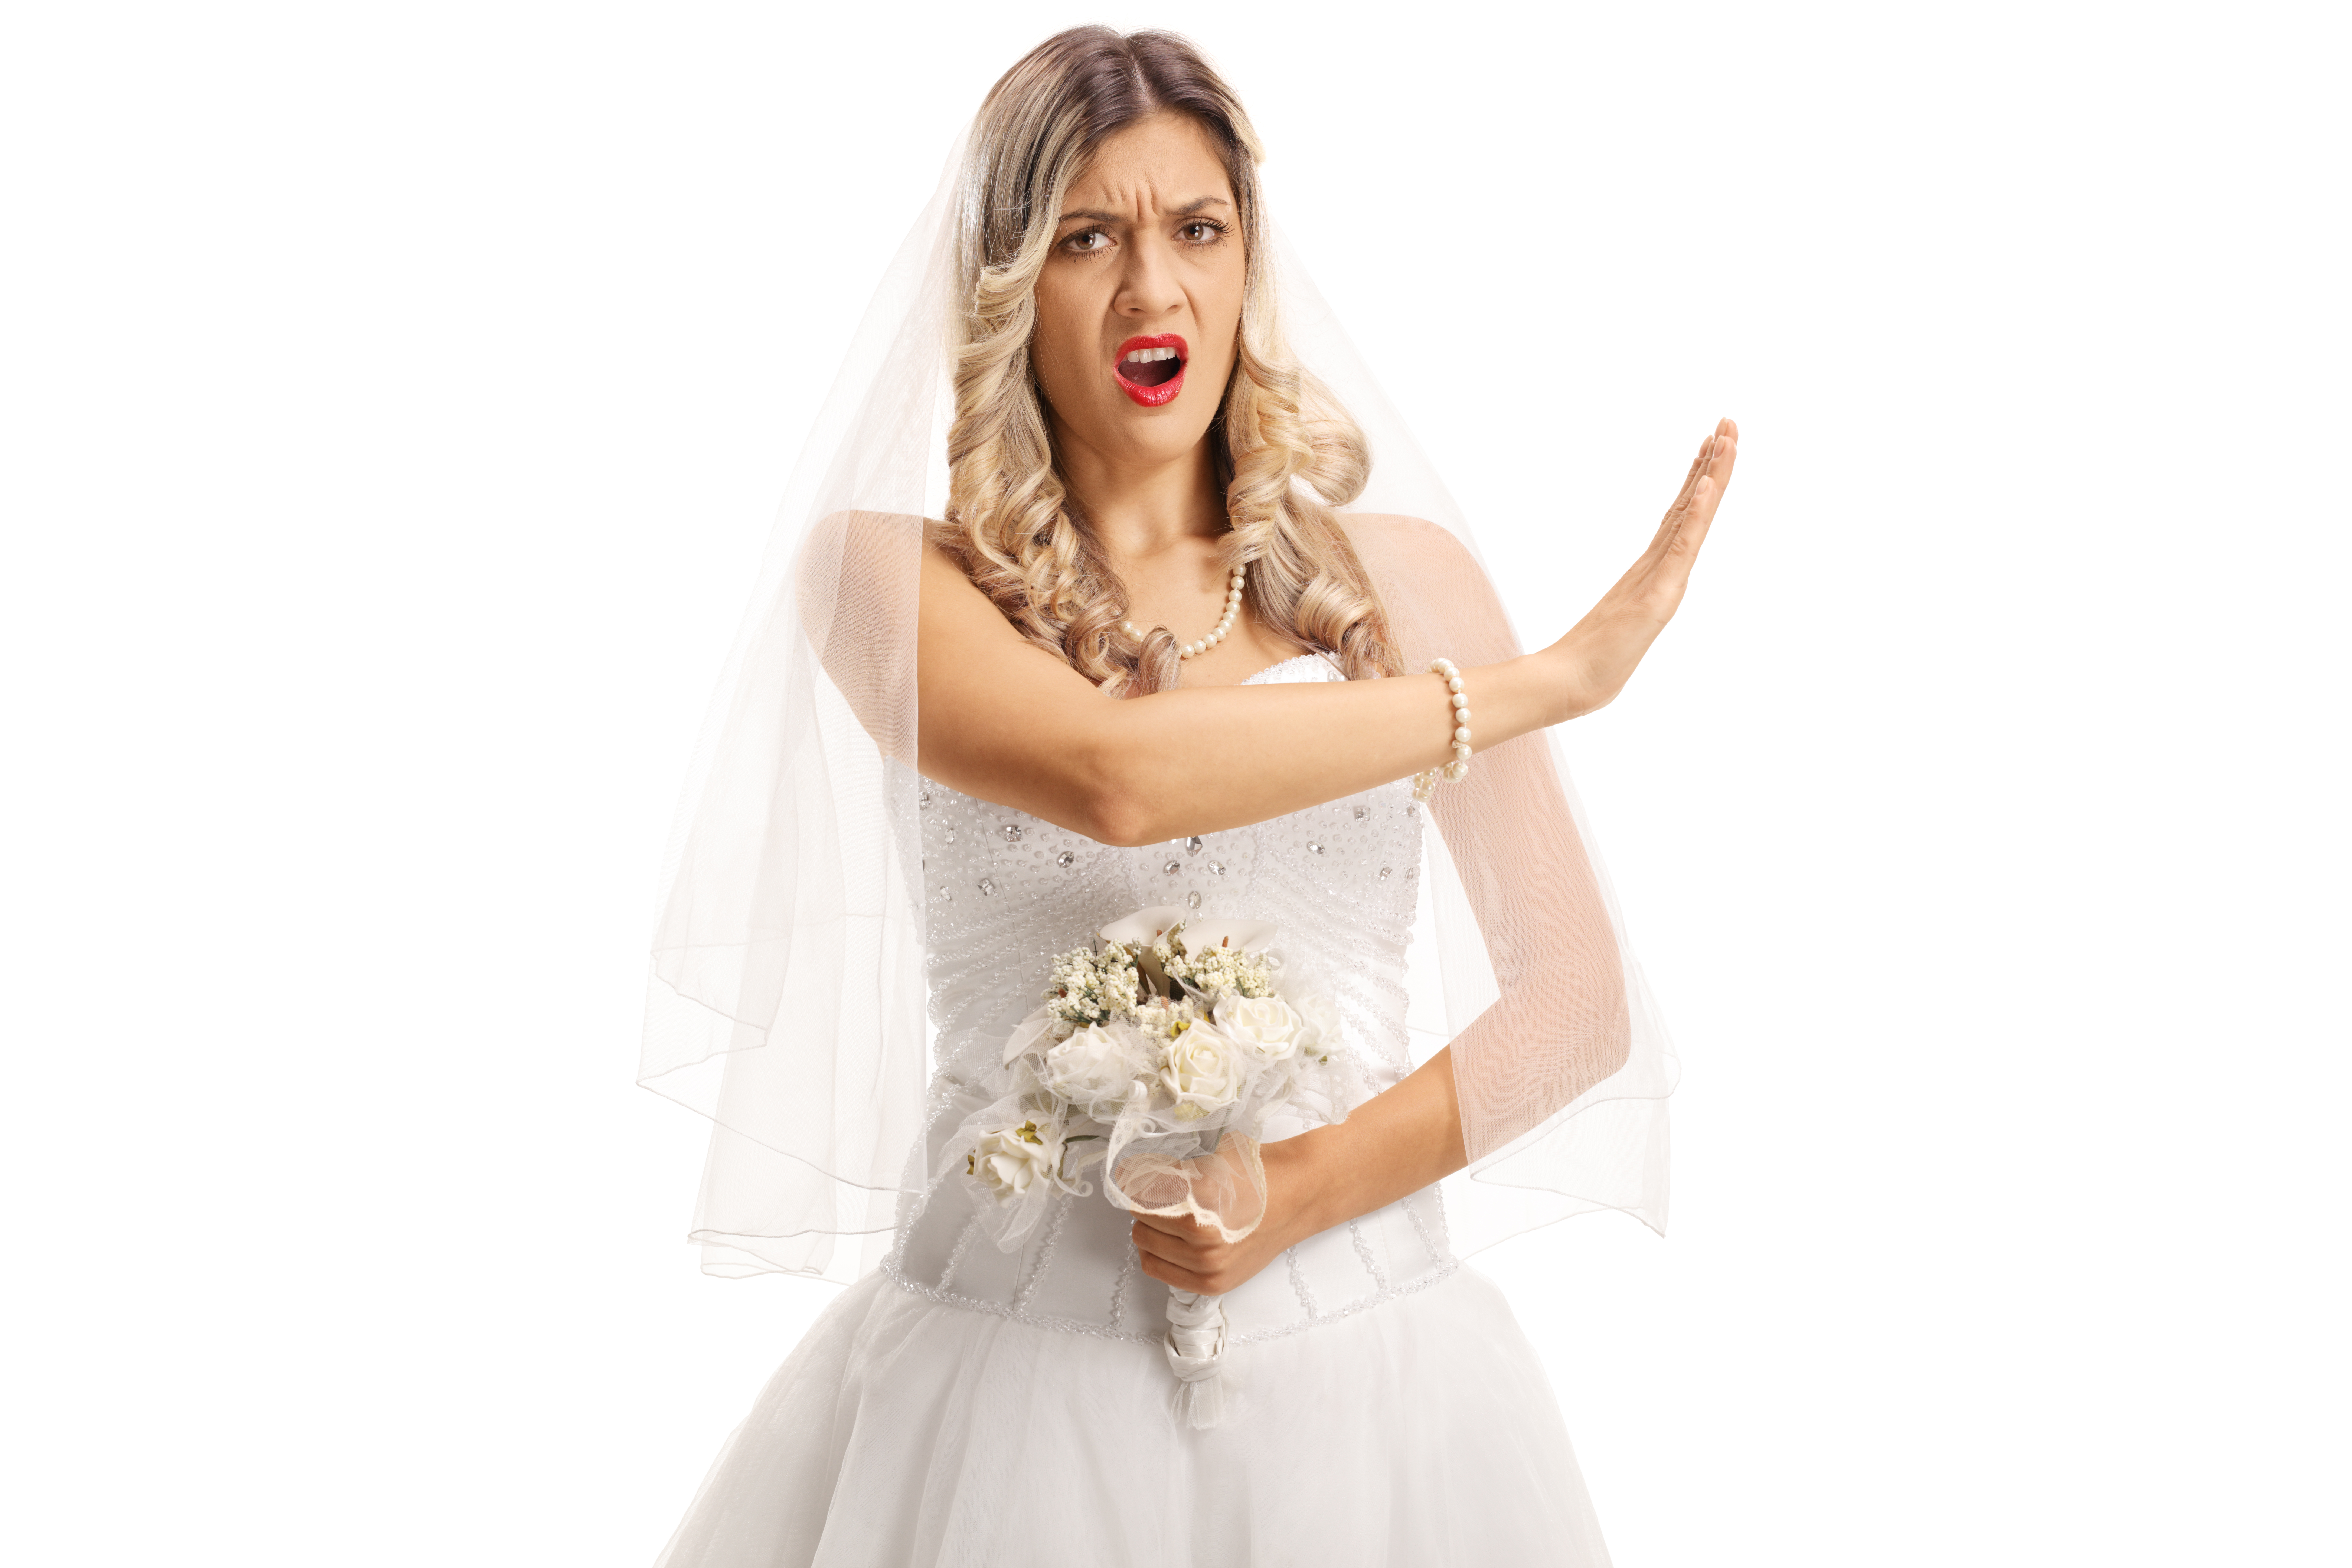 Une mariée en colère qui lève la main vers quelqu'un qui se trouve en dehors du cadre | Source : Shutterstock